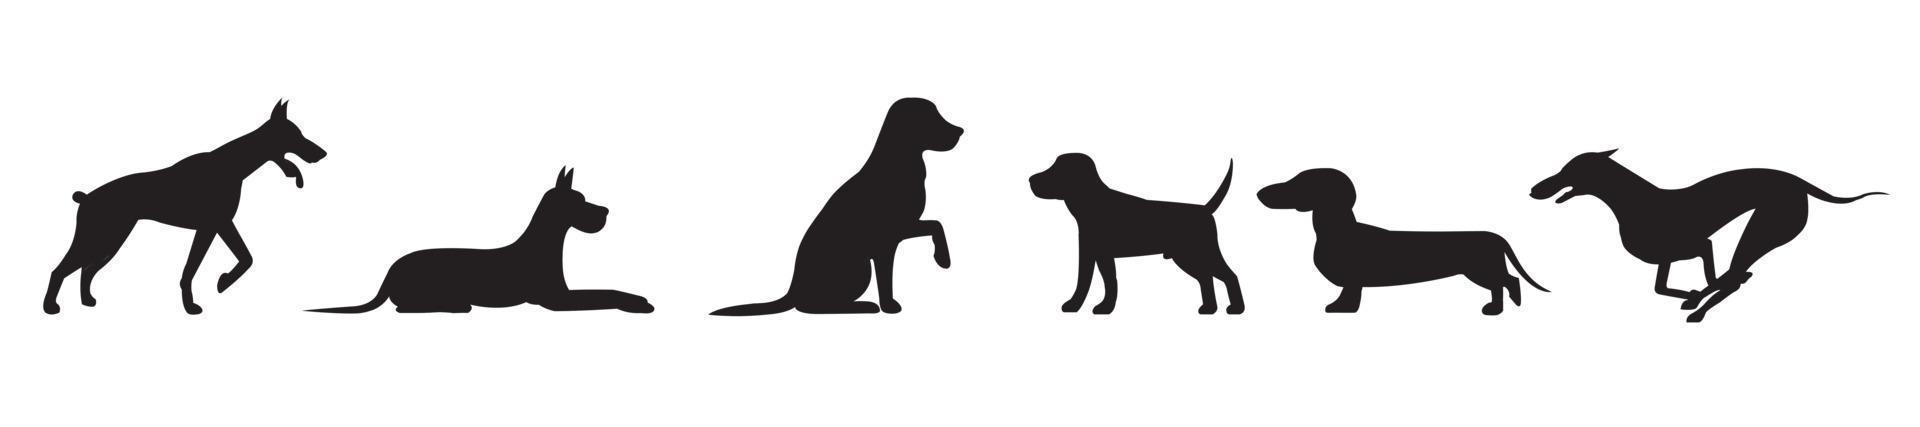 definido com silhuetas de um cachorro em diferentes posições isoladas vetor